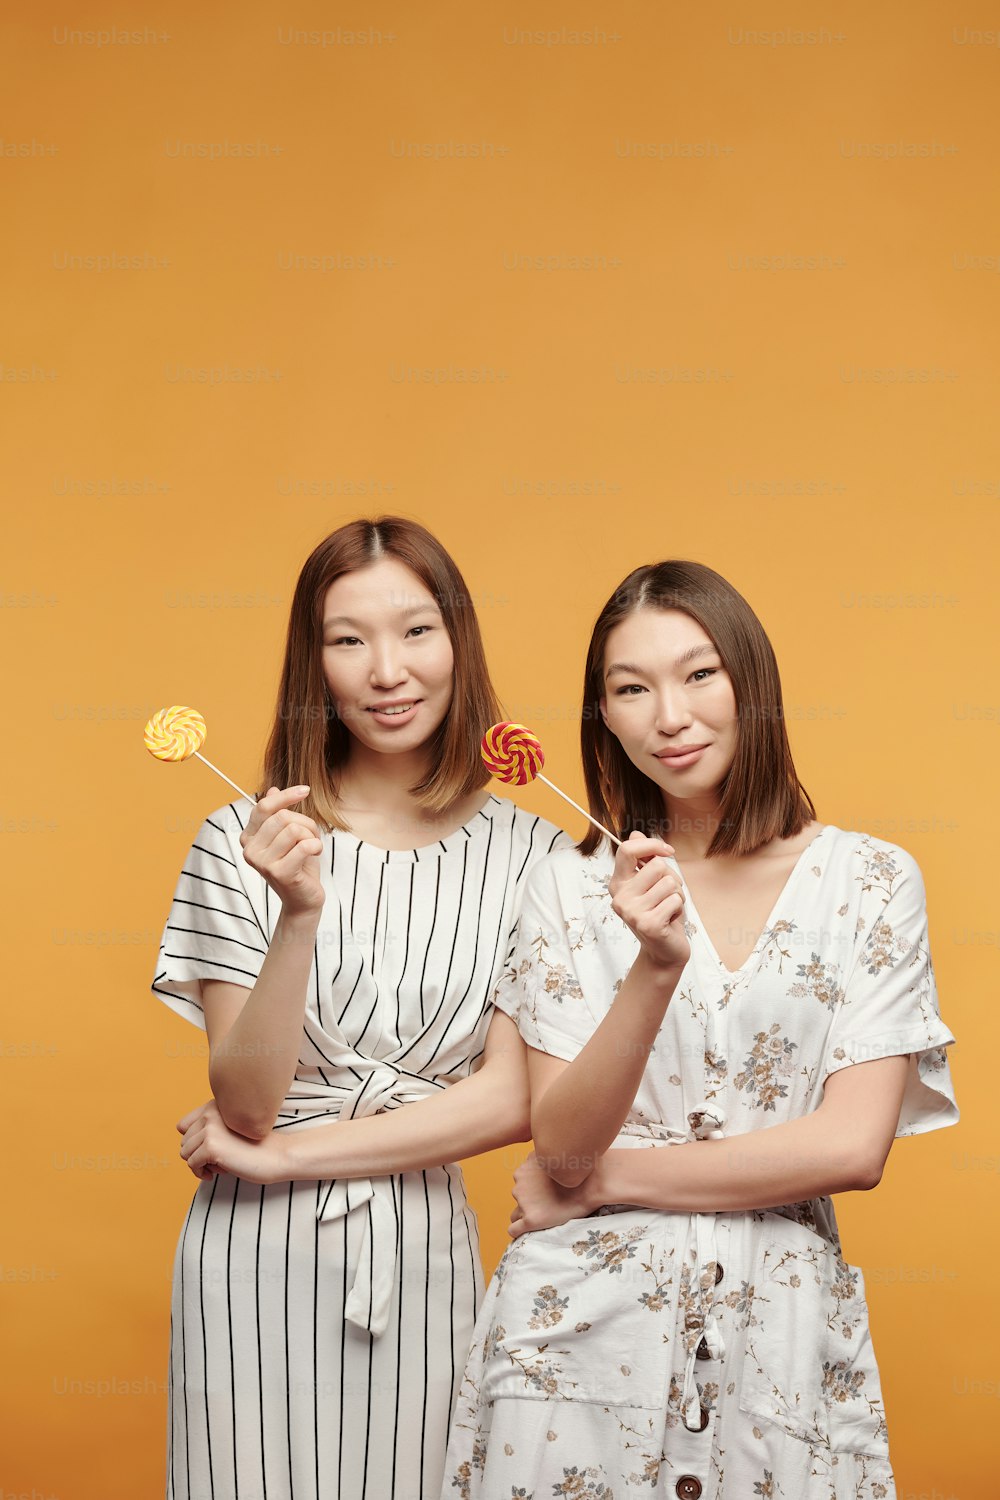 막대 사탕을 들고 있는 아시아 민족의 행복한 젊은 여성 쌍둥이가 노란색 배경에 카메라 앞에 서서 미소를 지으며 당신을 바라보고 있다